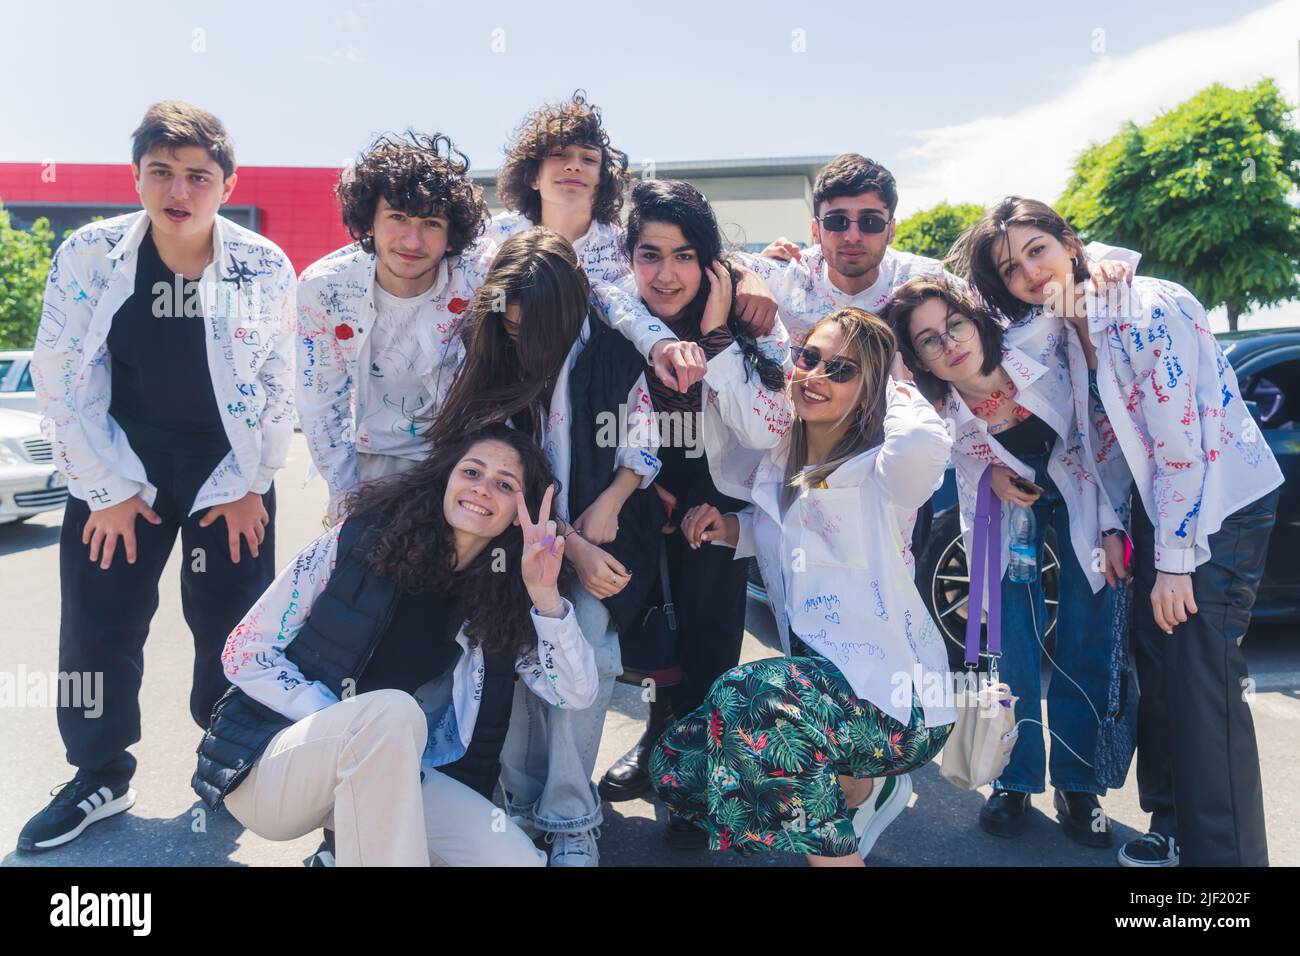 18.05.2022. Tbilisi, Georgia. Gruppo di studenti gioiosi sull'ultima campana, ultimo giorno della scuola. Foto di alta qualità Foto Stock